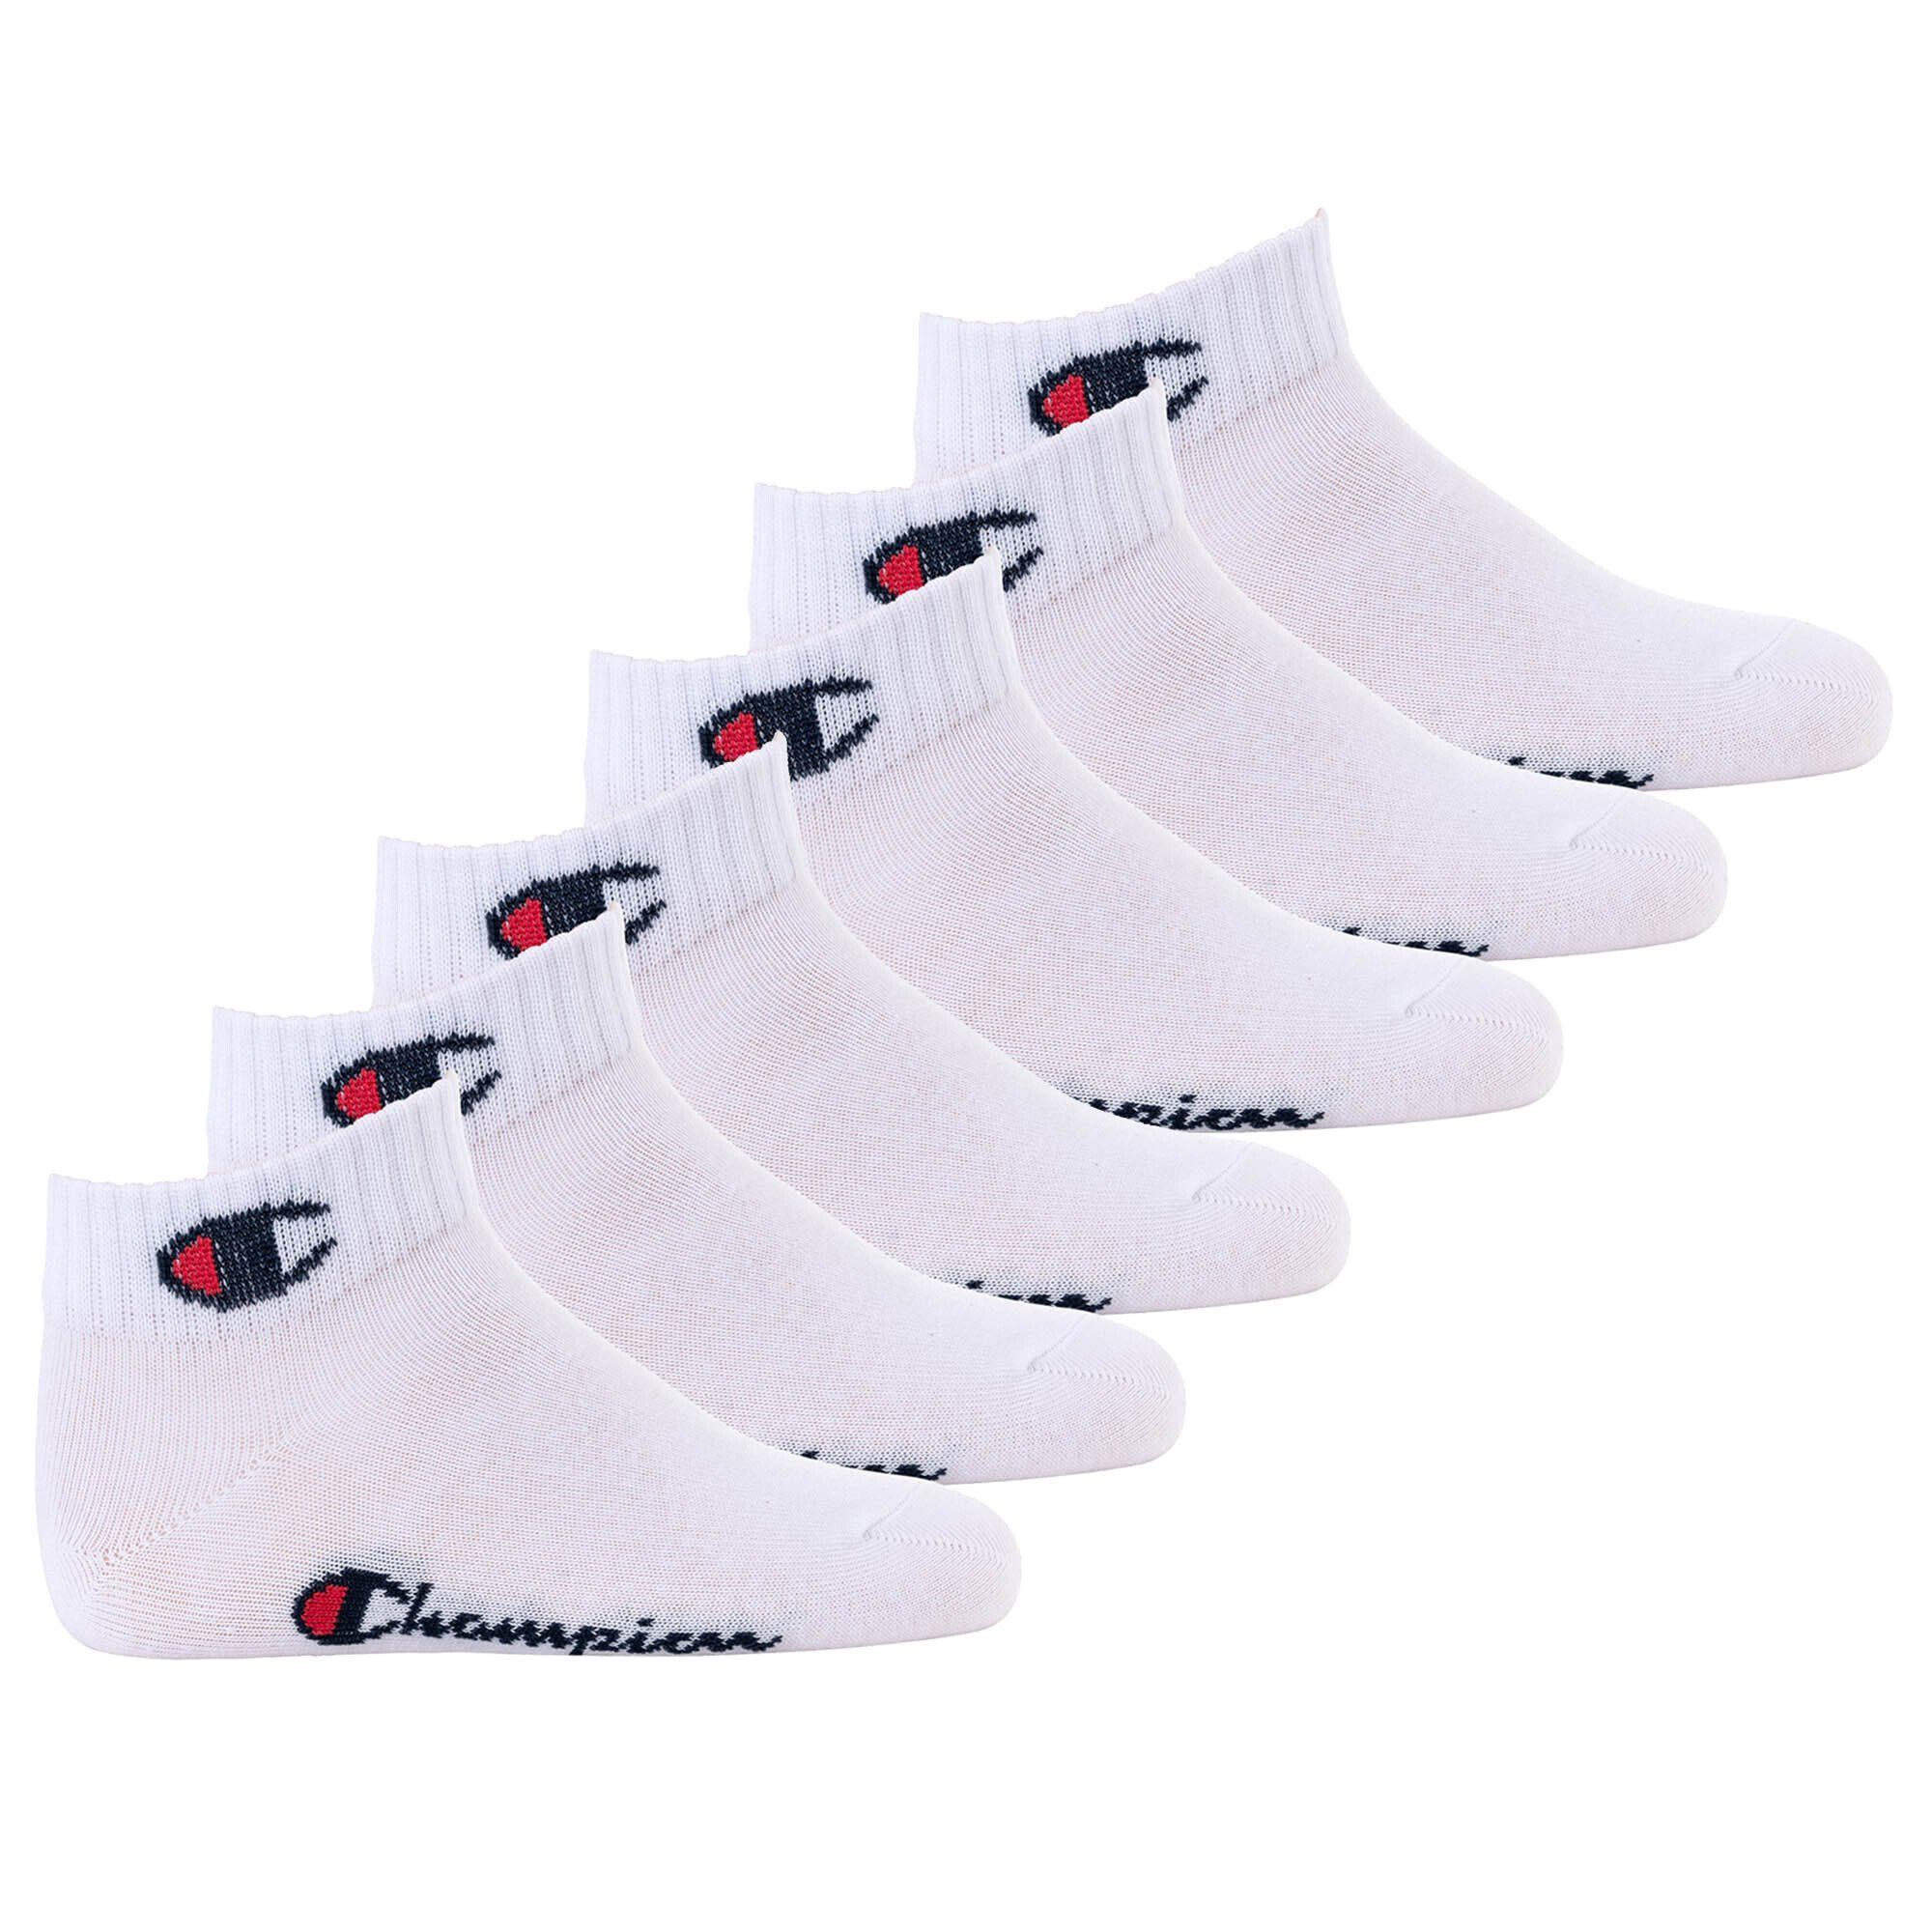 Restposten Champion Freizeitsocken Crew Socken, 6er Pack- Kinder Weiß Socken, einfarbig